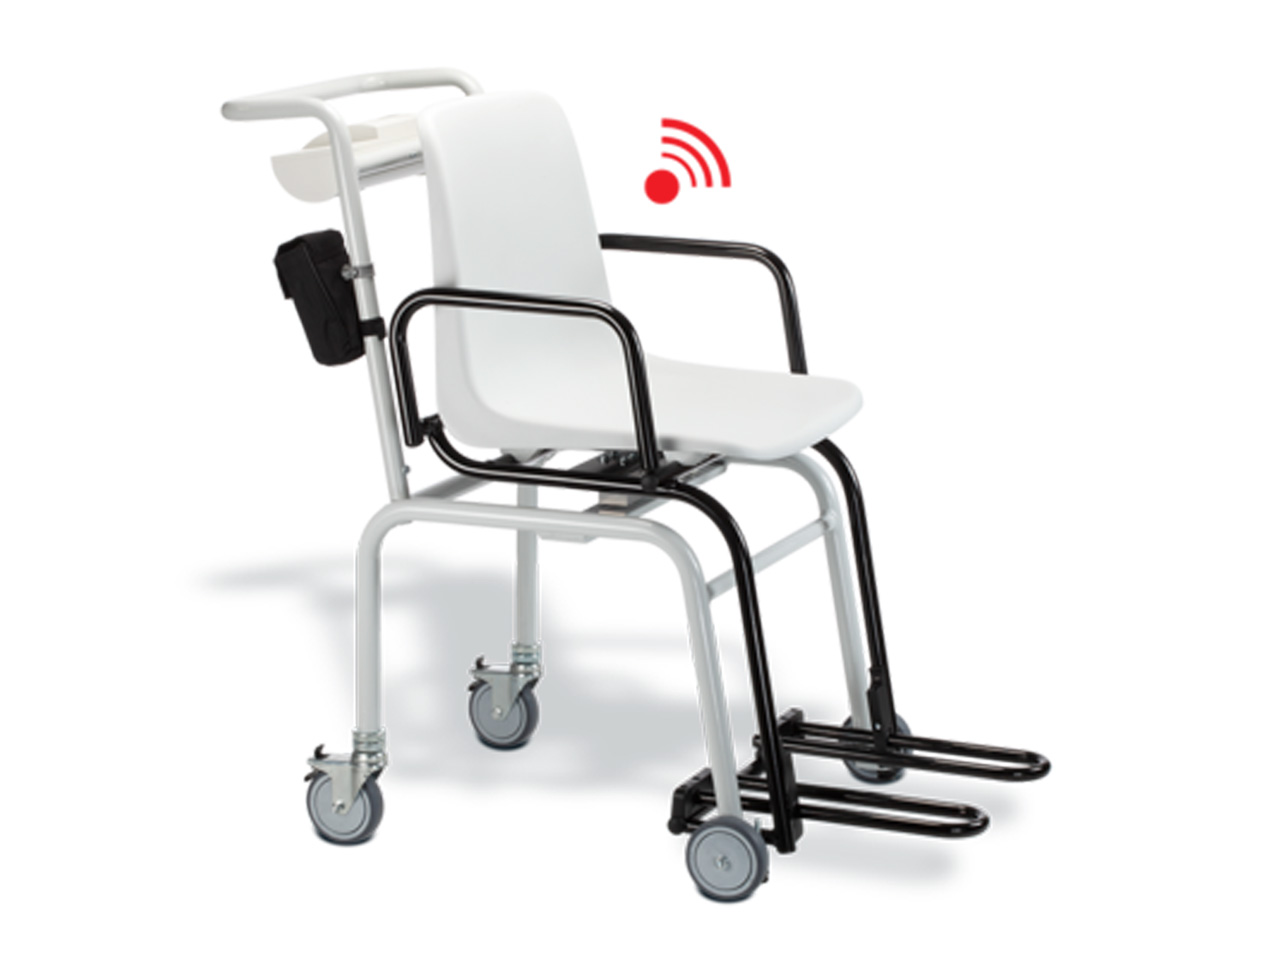 Seca 959 digitale stoelweegschaal met wegzwenkbare armleuningen en voetsteunen - klasse III - 300 kg - 1 st